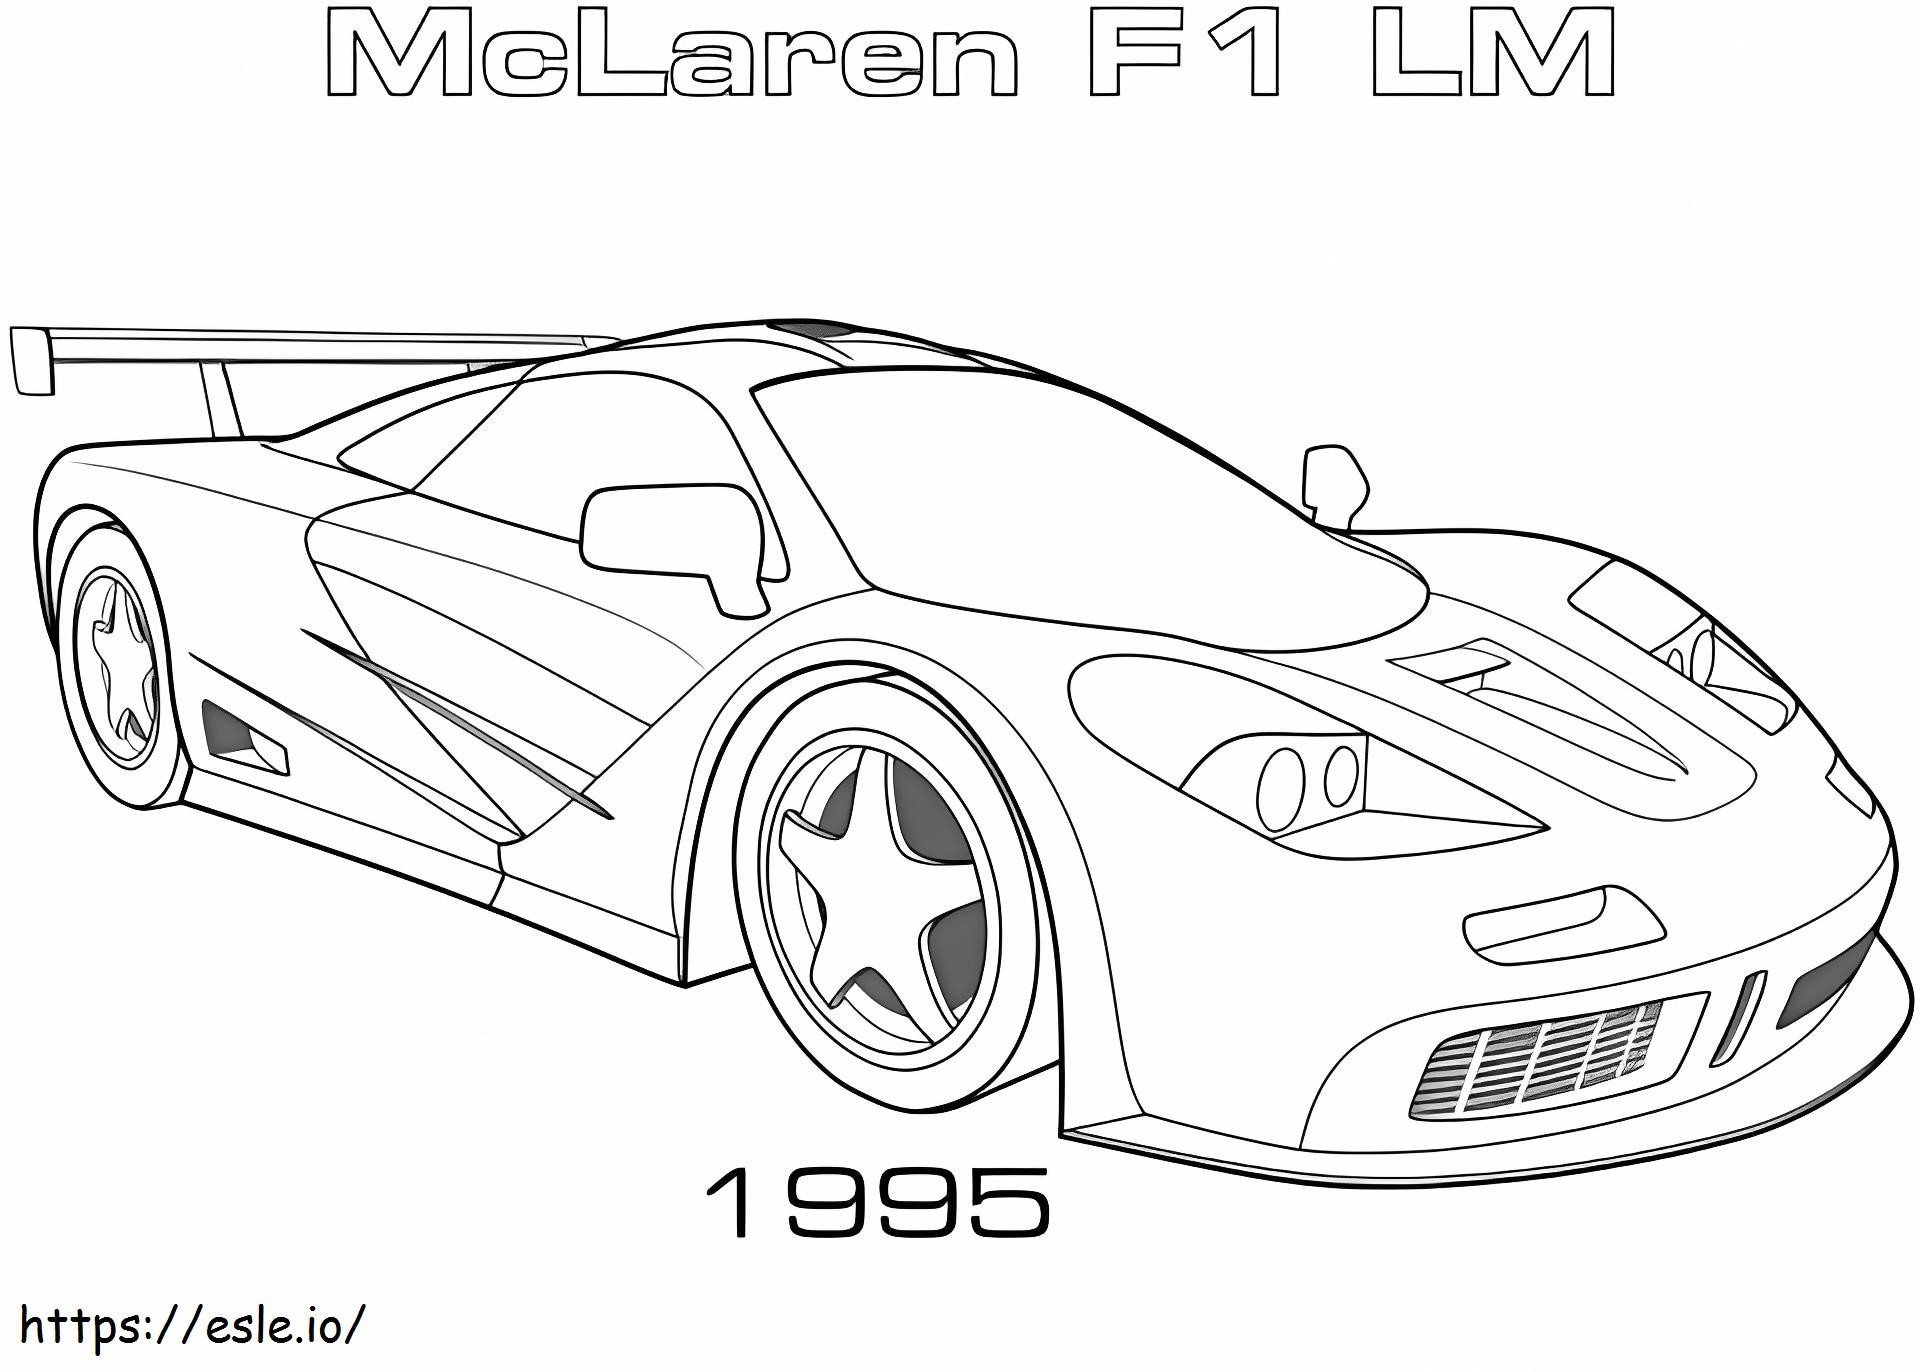 1527154118 1995 McLaren F1 Lm kolorowanka